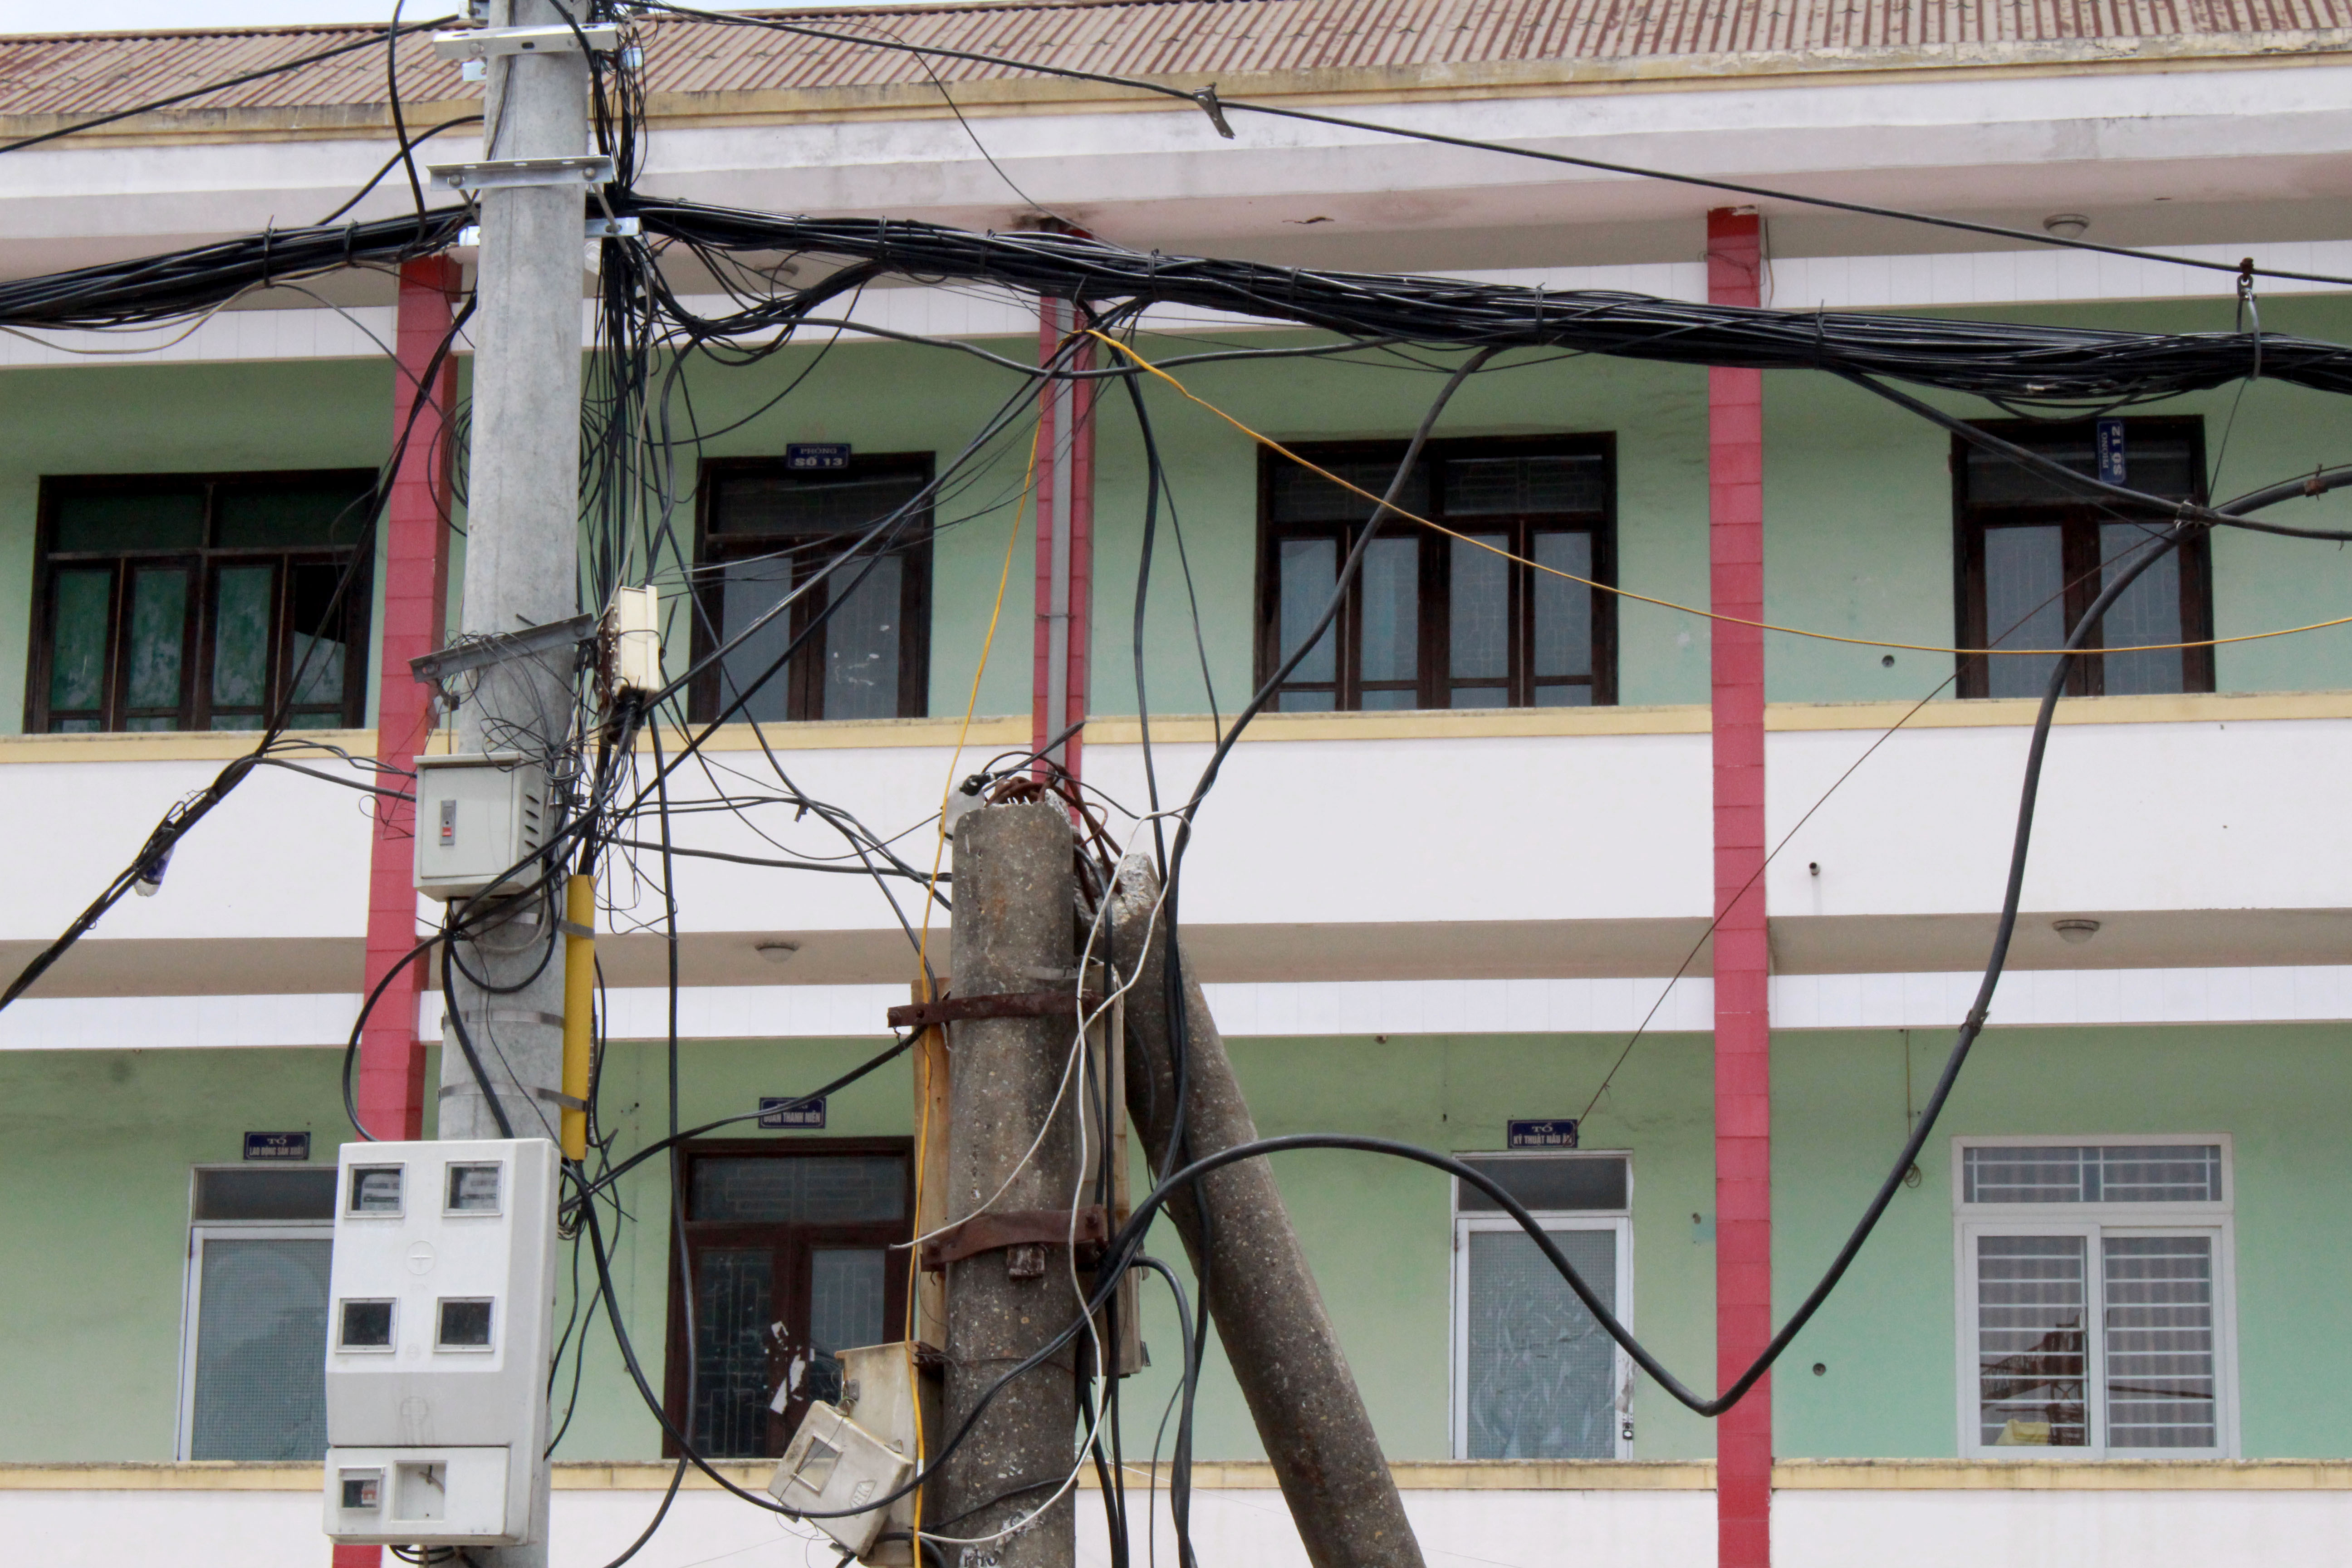 Cột điện tại số 247, đường Lê Duẩn (khối 13, phường Trung Đô) bị gãy sau bão số 10, năm 2017, đã được thay thế cột mới nhưng cột điện cũ vẫn chưa được tháo dỡ và hệ thống dây điện, dây viễn thông đang bị võng xuống.Ảnh:Đinh Nguyệt